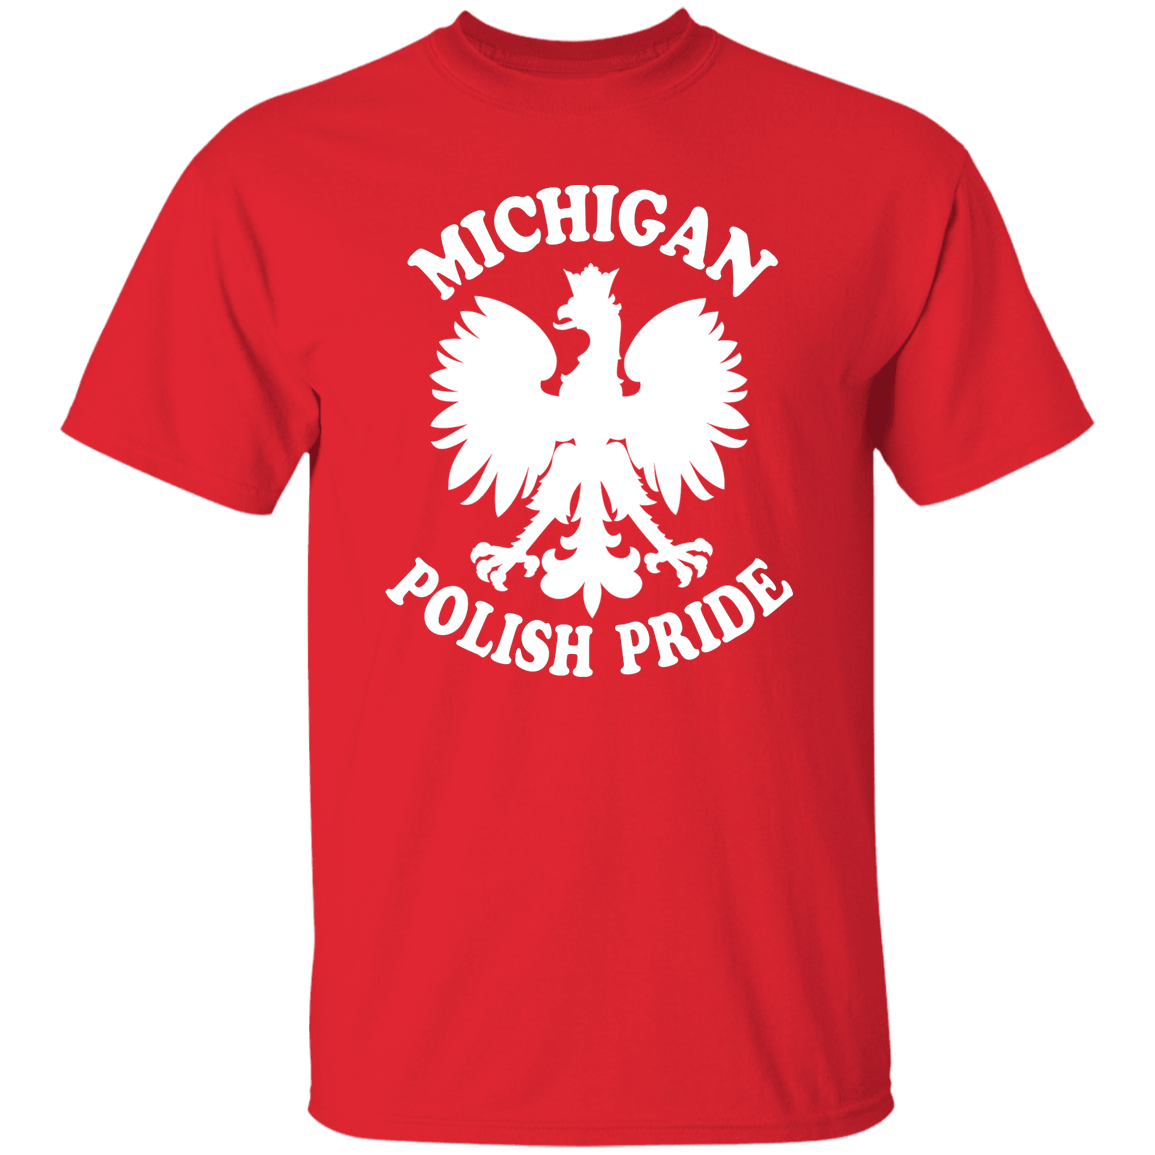 Michigan Polish Pride Apparel CustomCat G500 5.3 oz. T-Shirt Red S